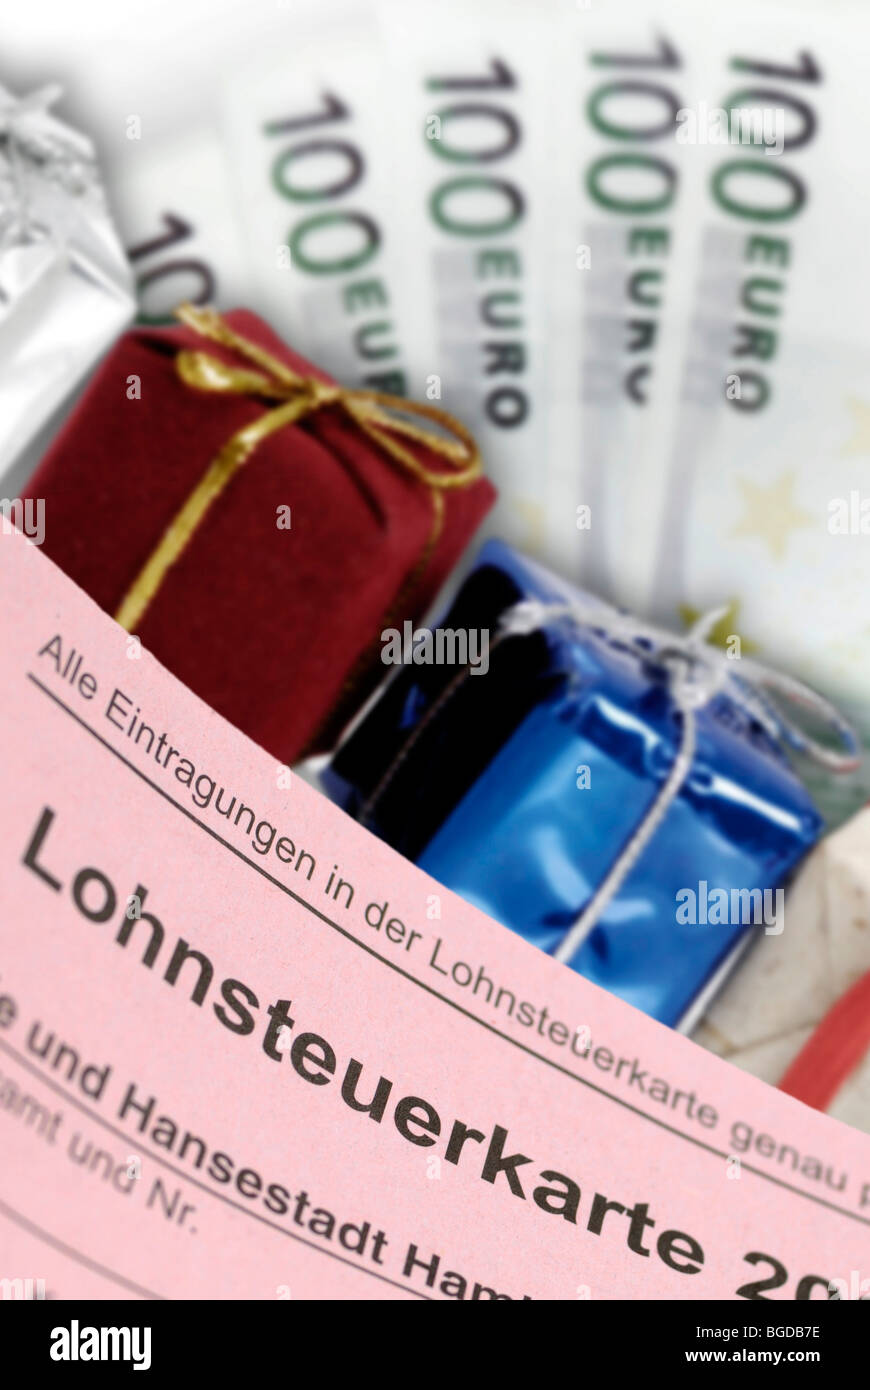 Scheda fiscale, doni e delle banconote, immagine simbolica di omaggi fiscale Foto Stock